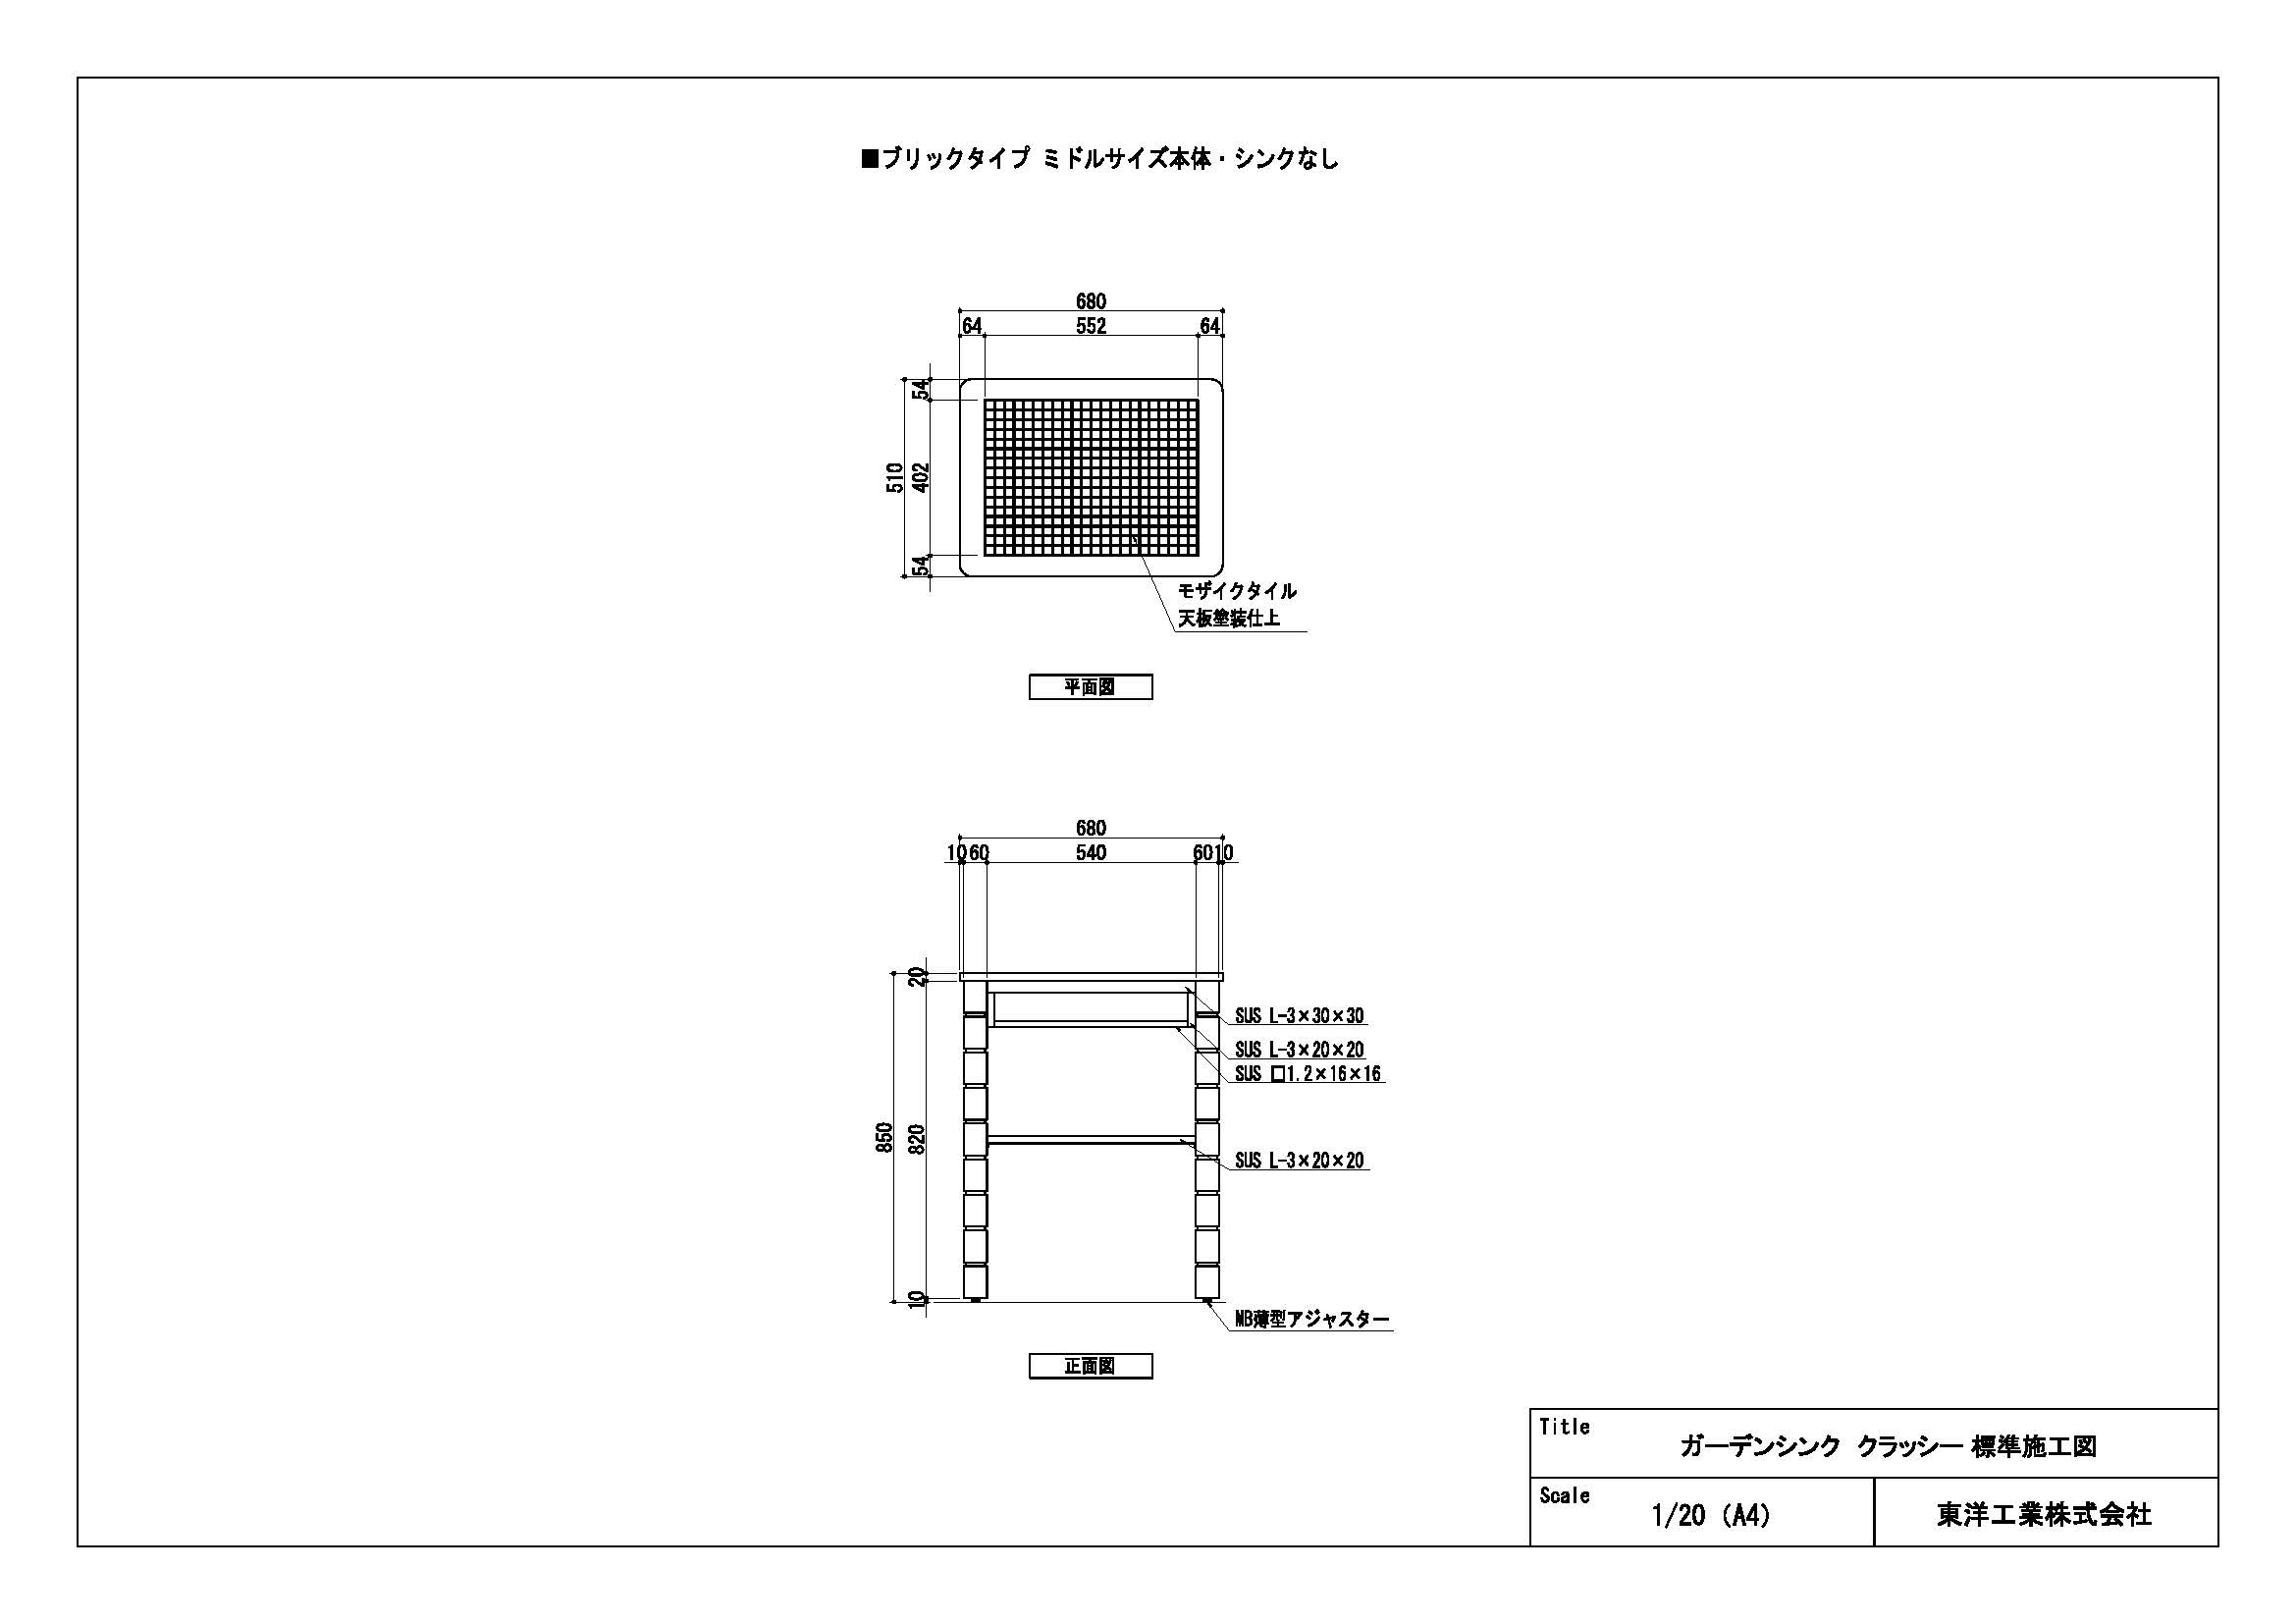 ガーデンシンク クラッシー(ブリックタイプミドルサイズ シンクなし) 標準施工図